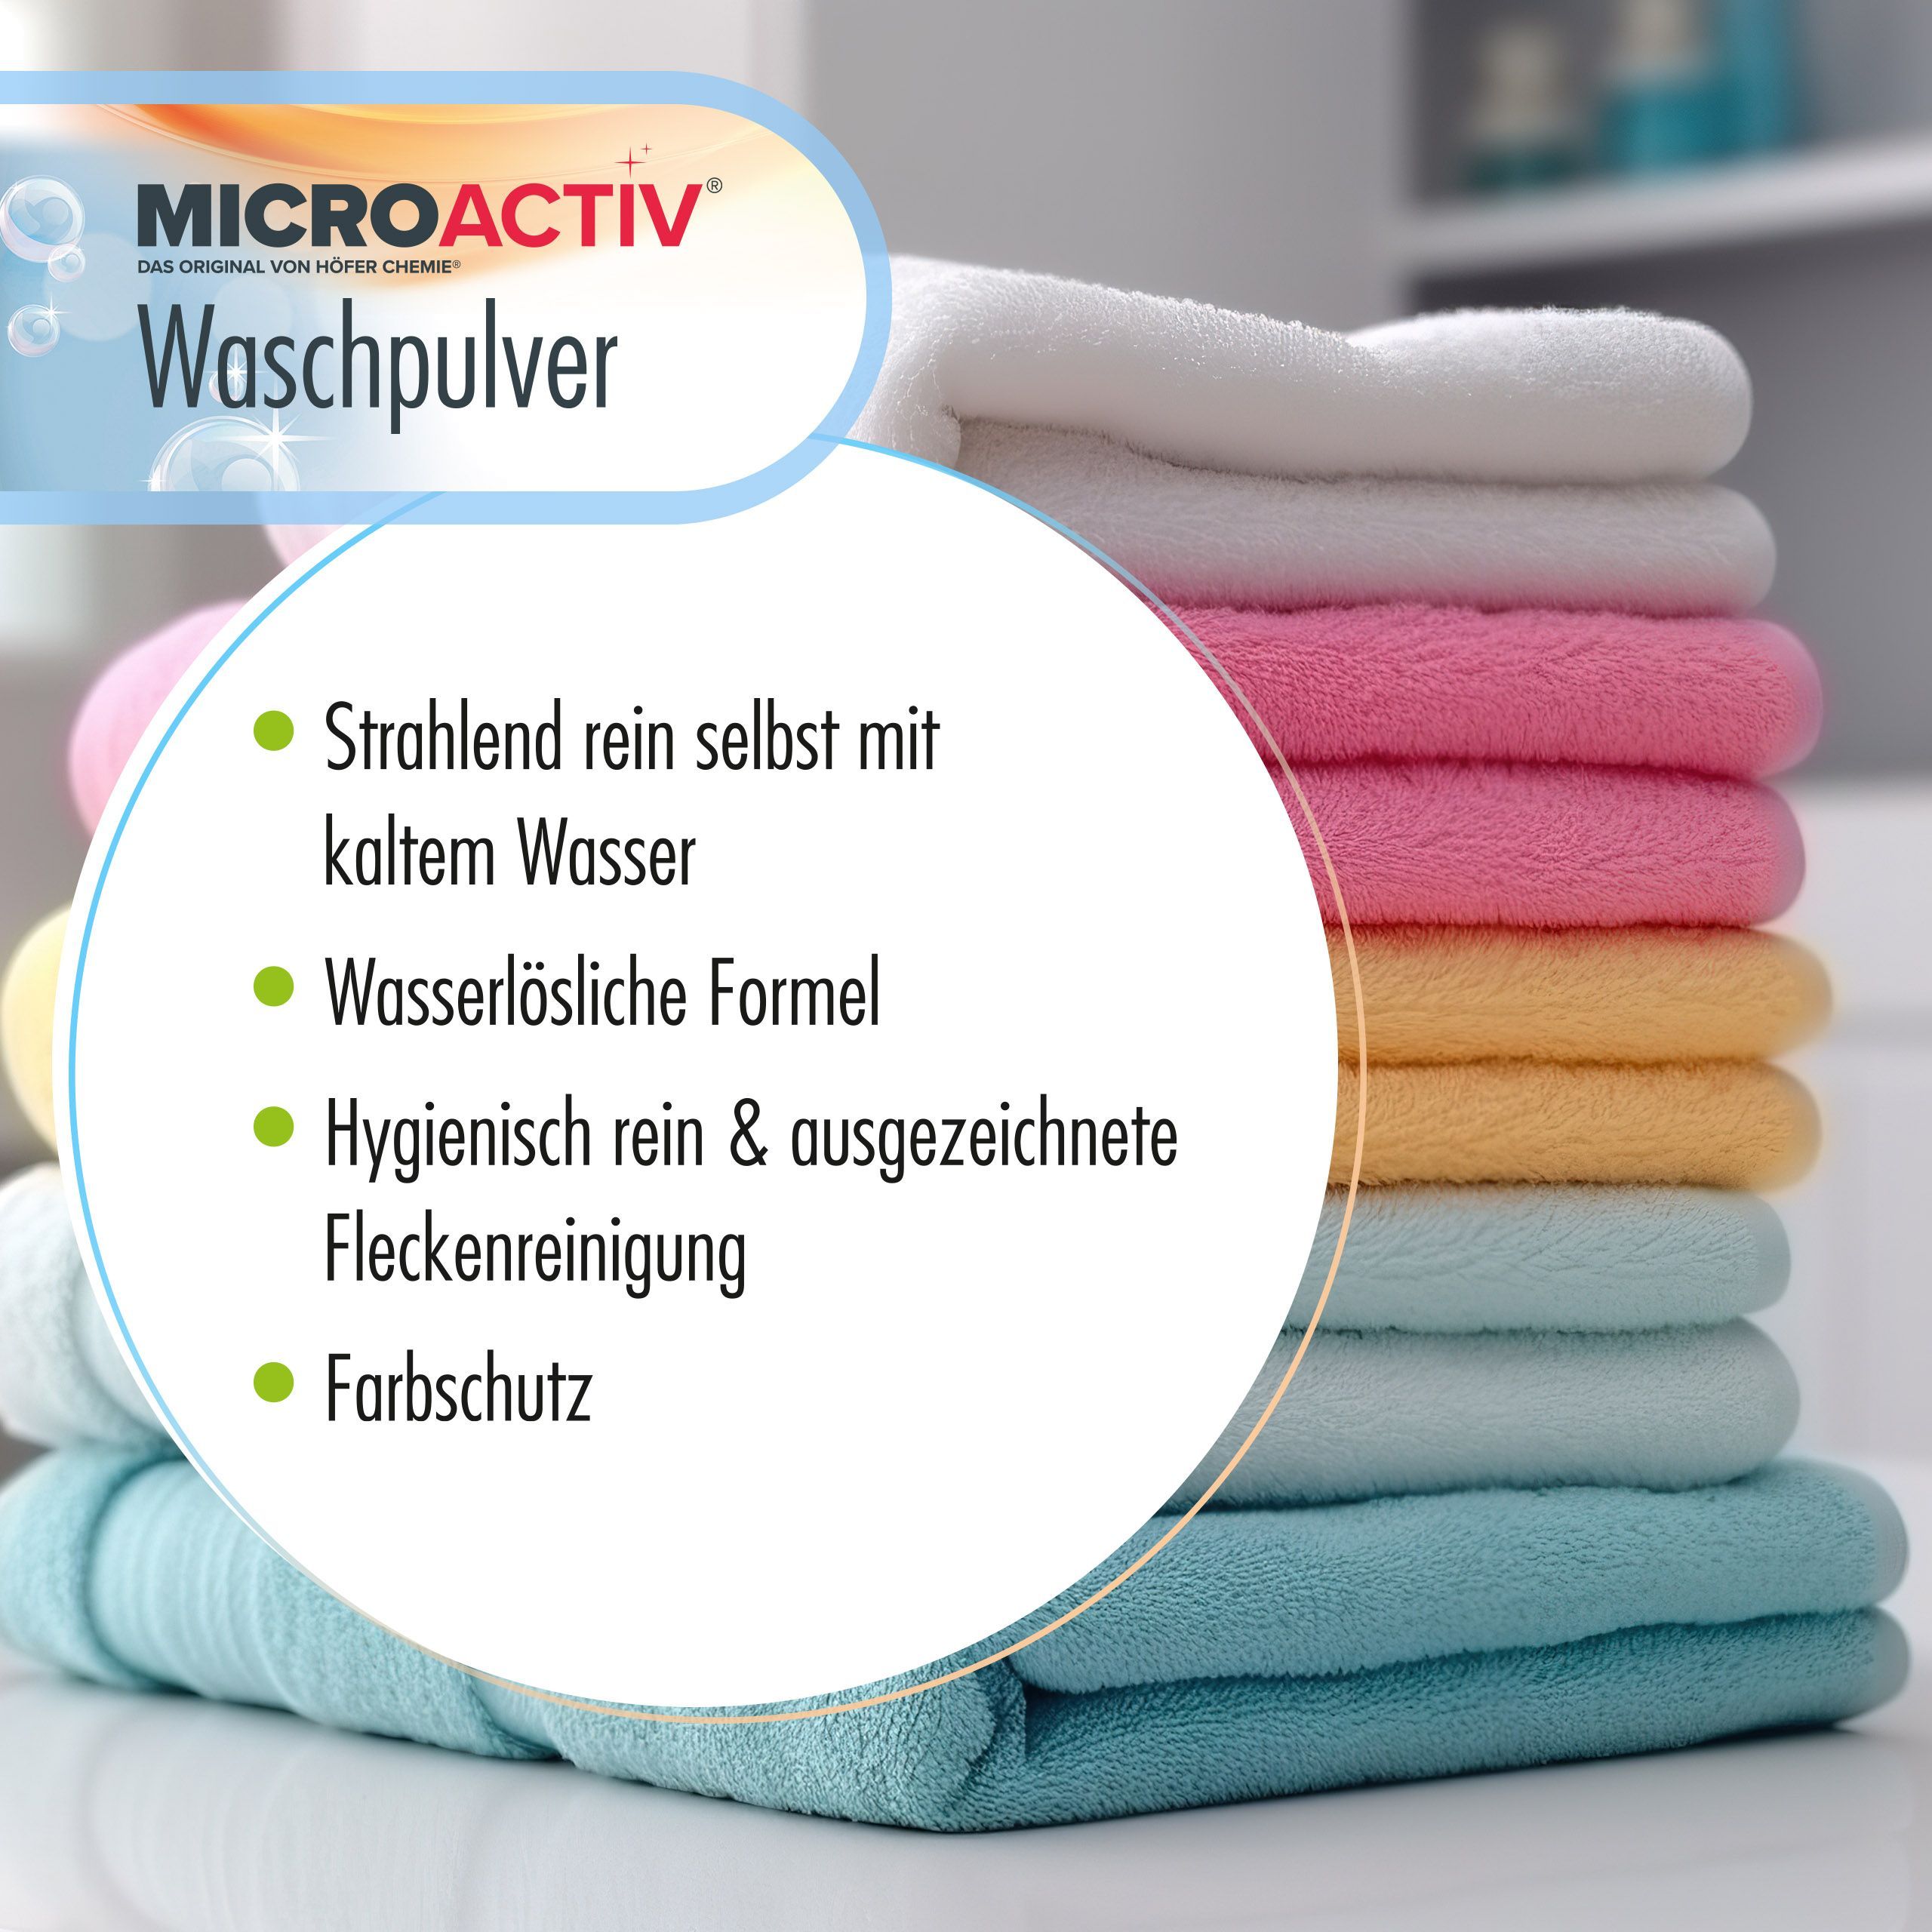 10 kg de lessive en poudre Microactiv®